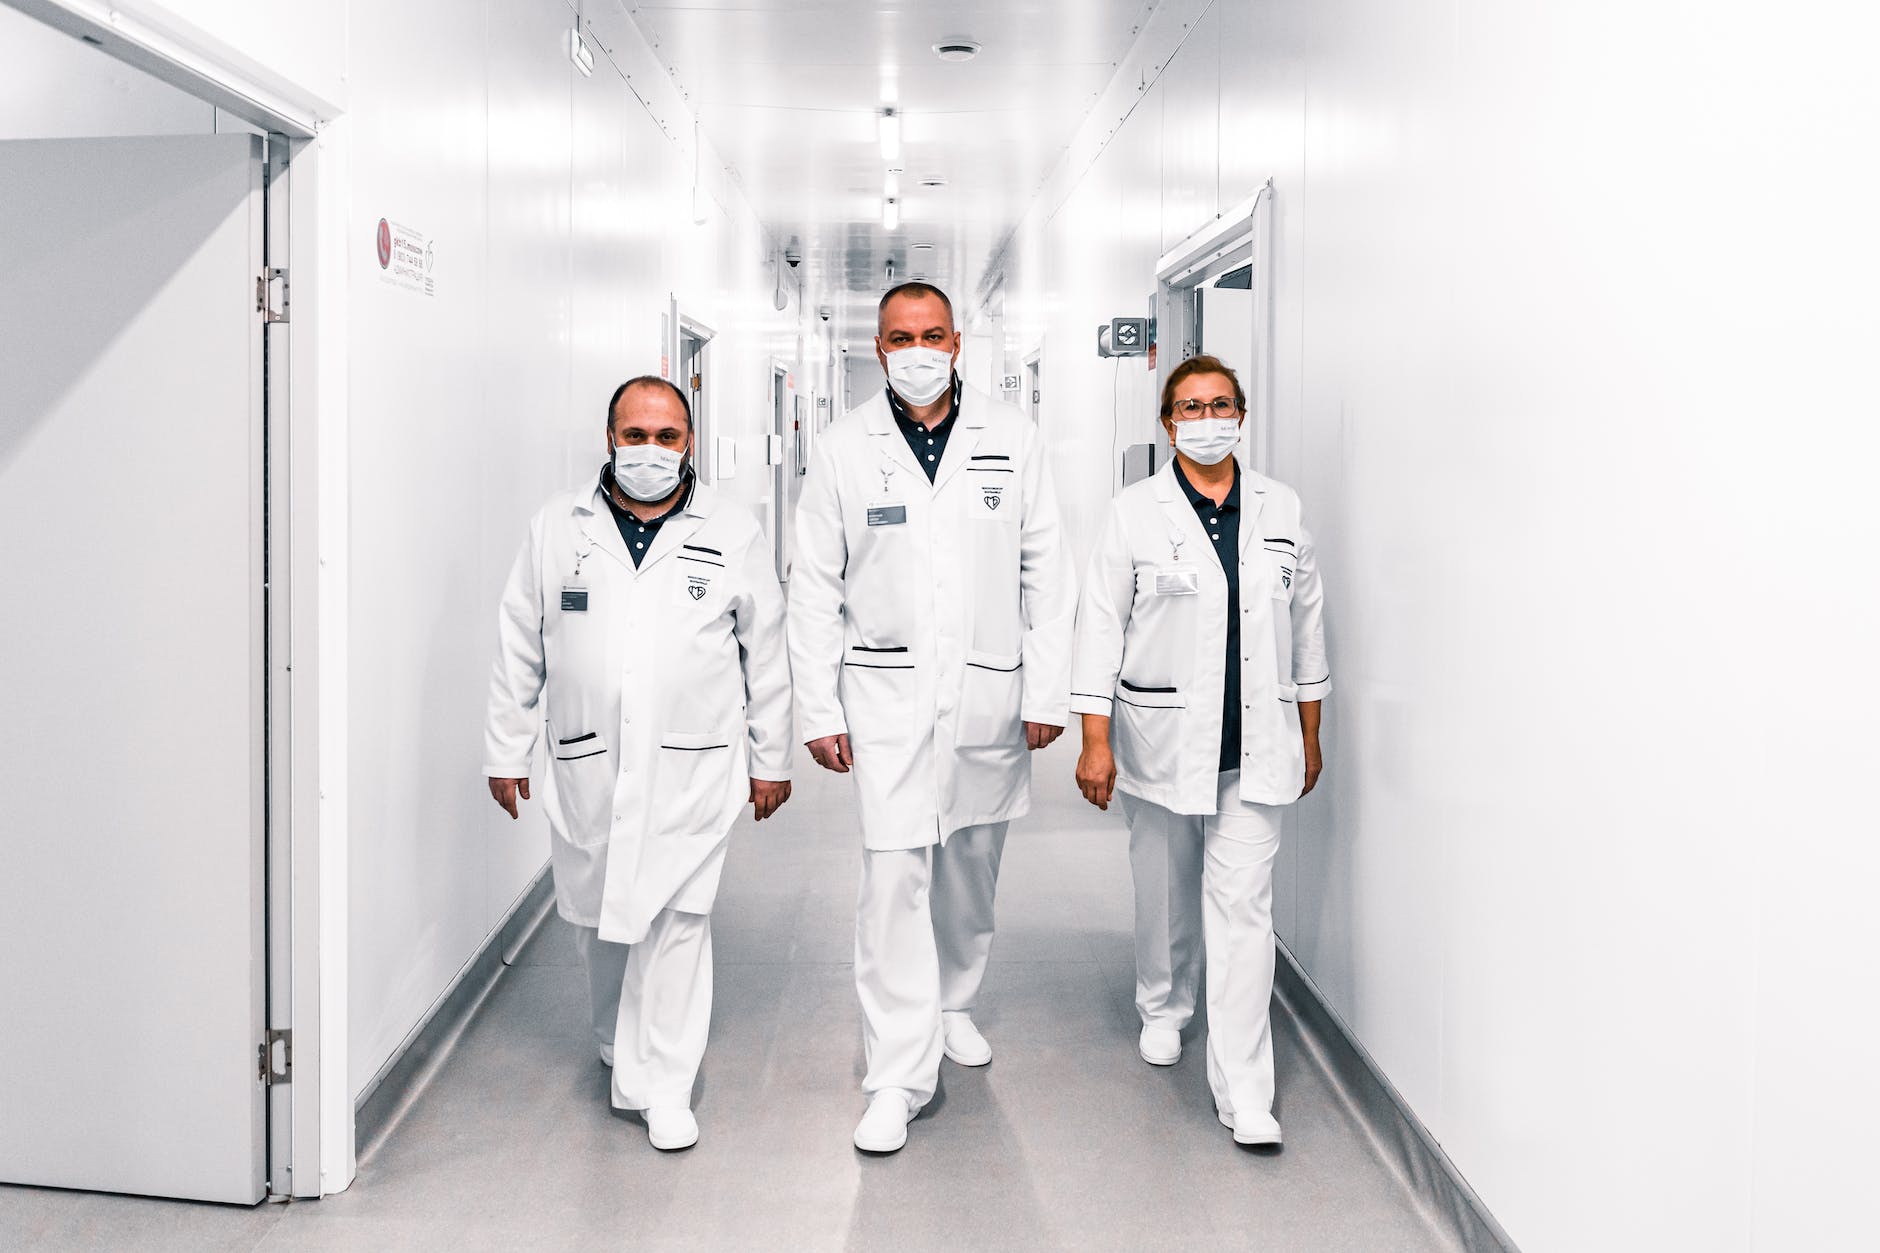 Group of doctors walking in corridor